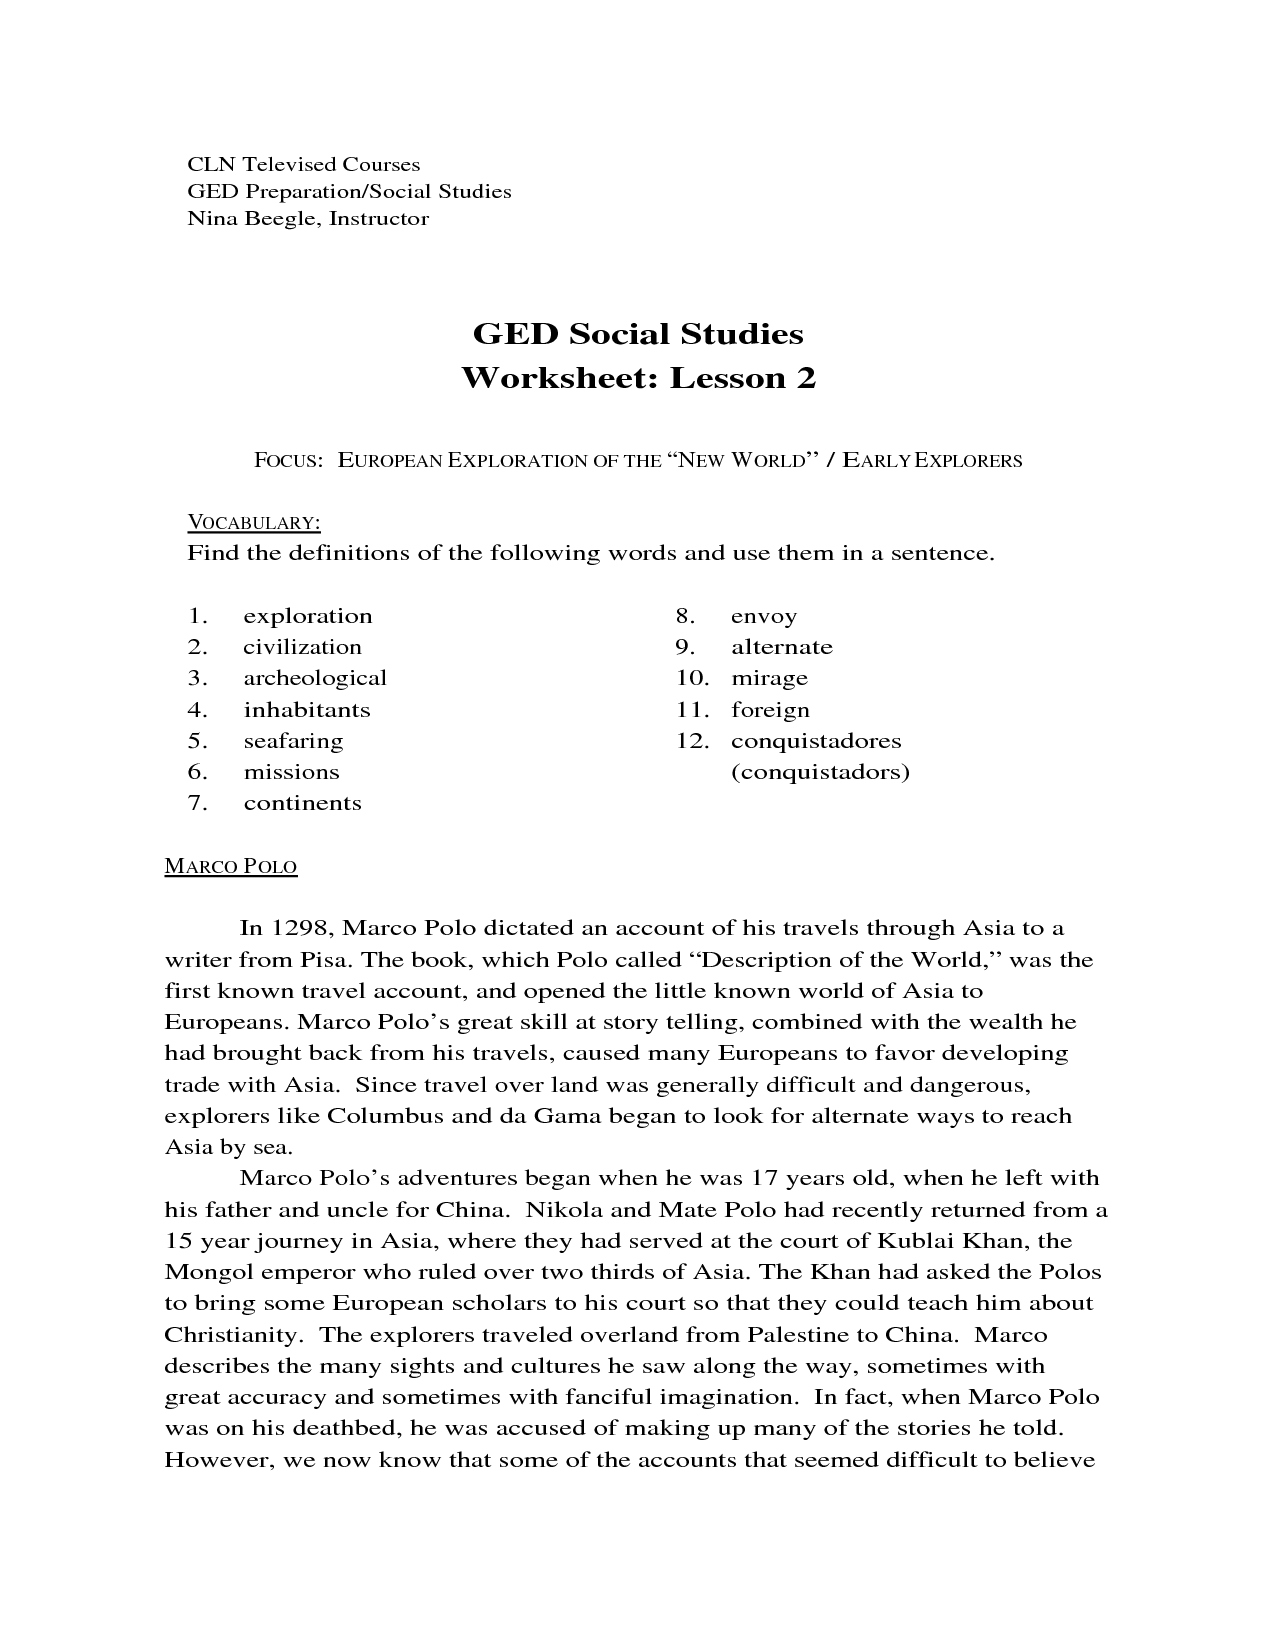 Free Printable Ged Social Studies Practice Test